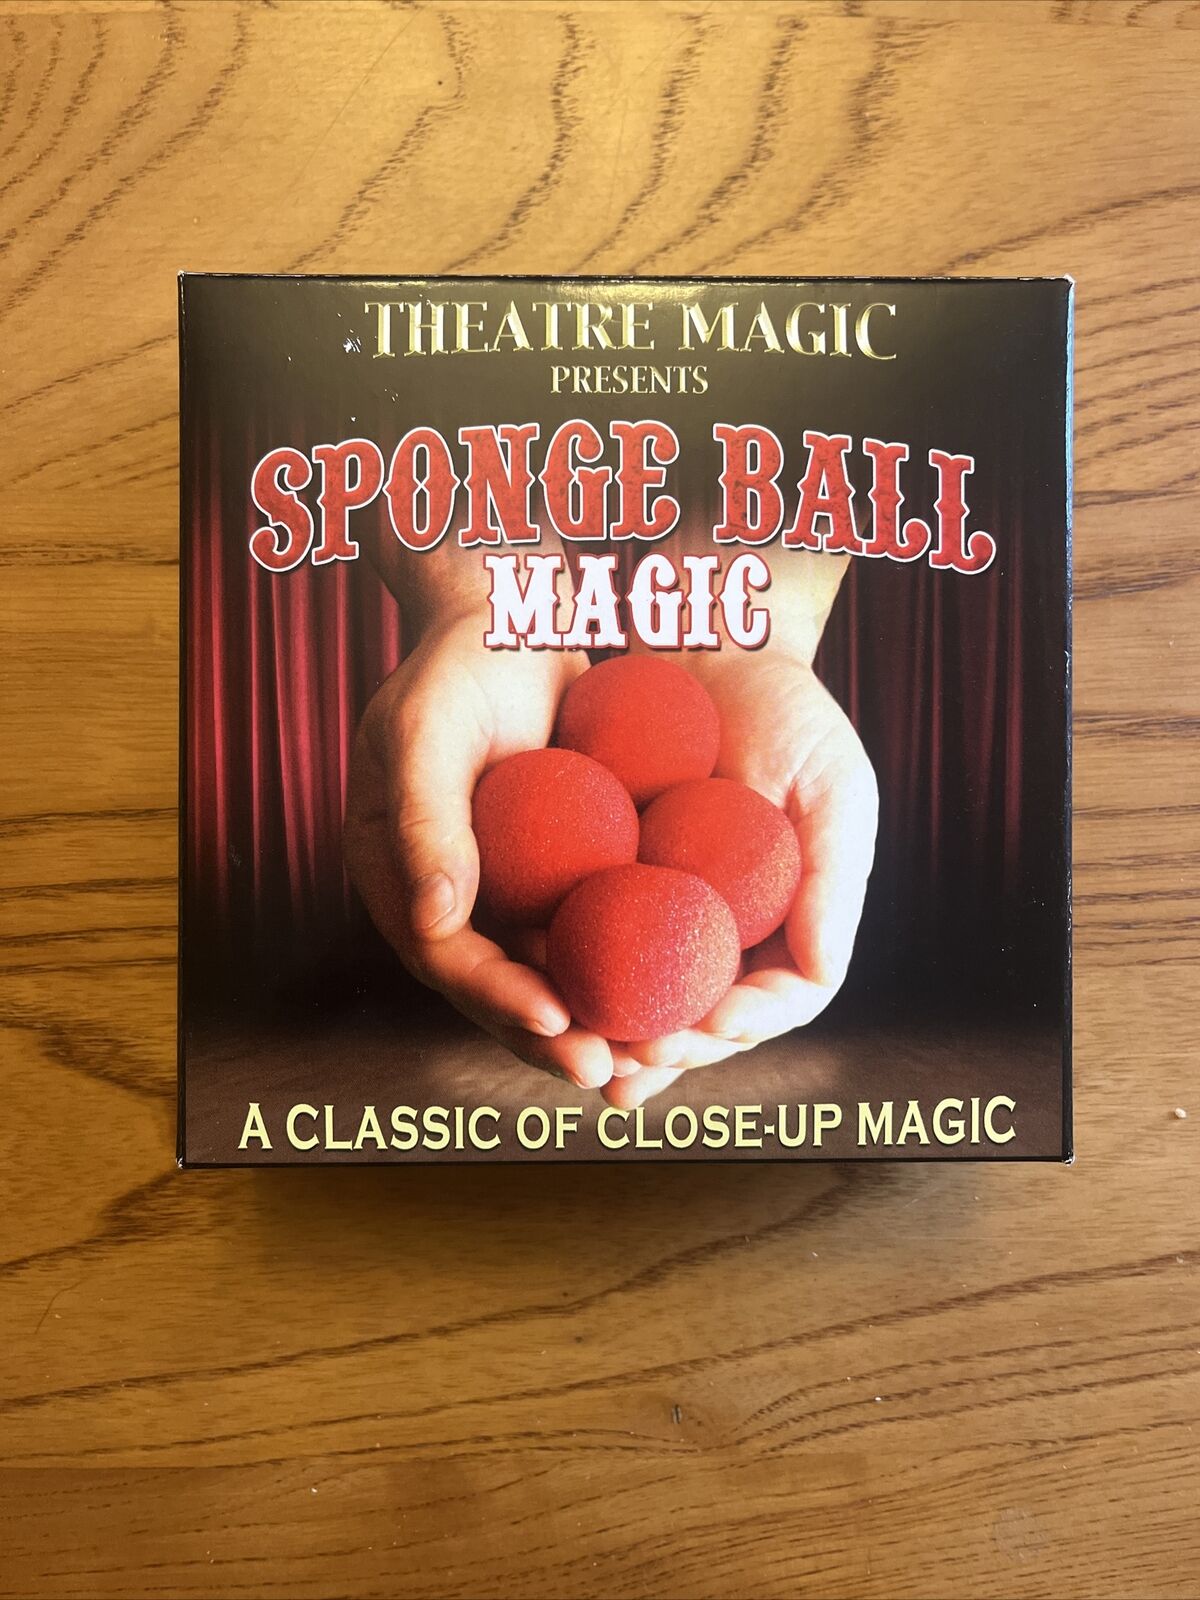 Theatre Magic Presents “Sponge Ball Magic”  